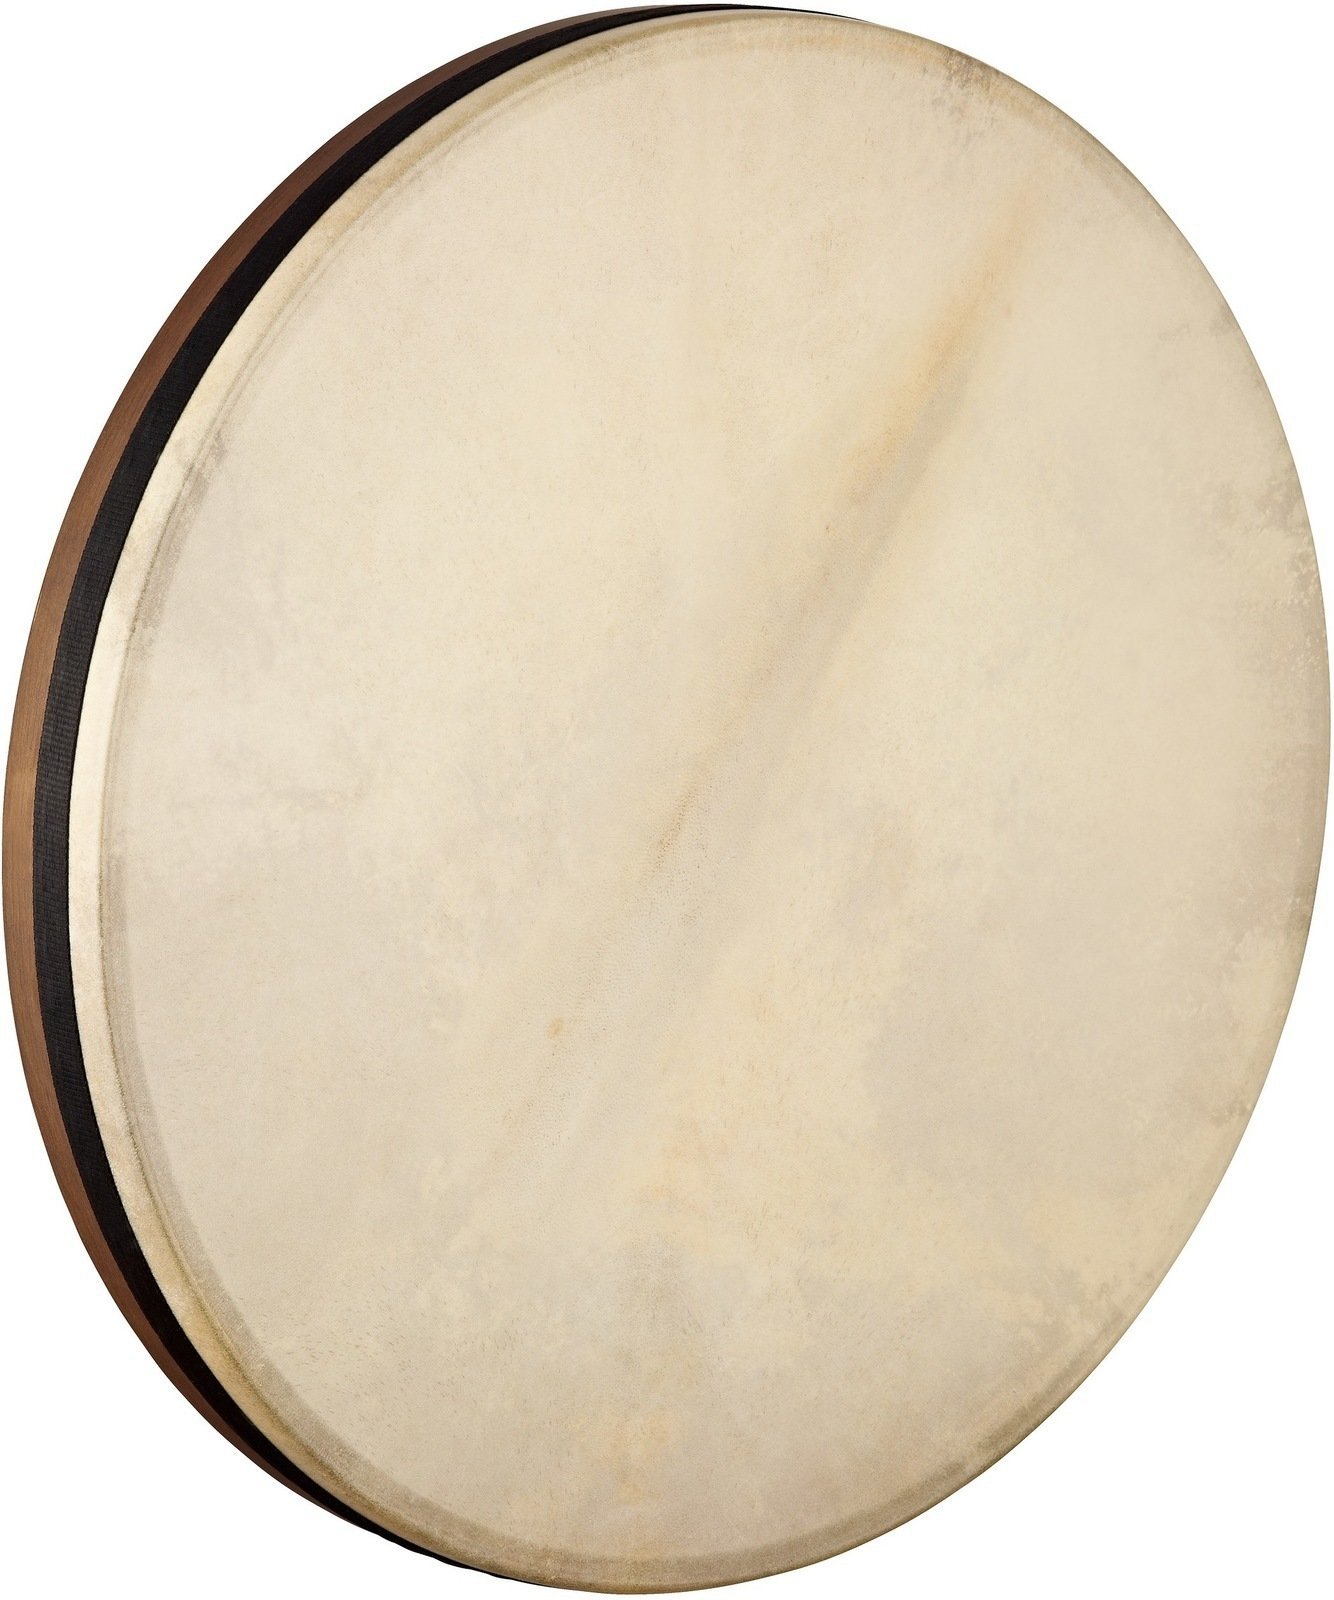 Hand Drum Meinl AE-FD22T Artisan Hand Drum